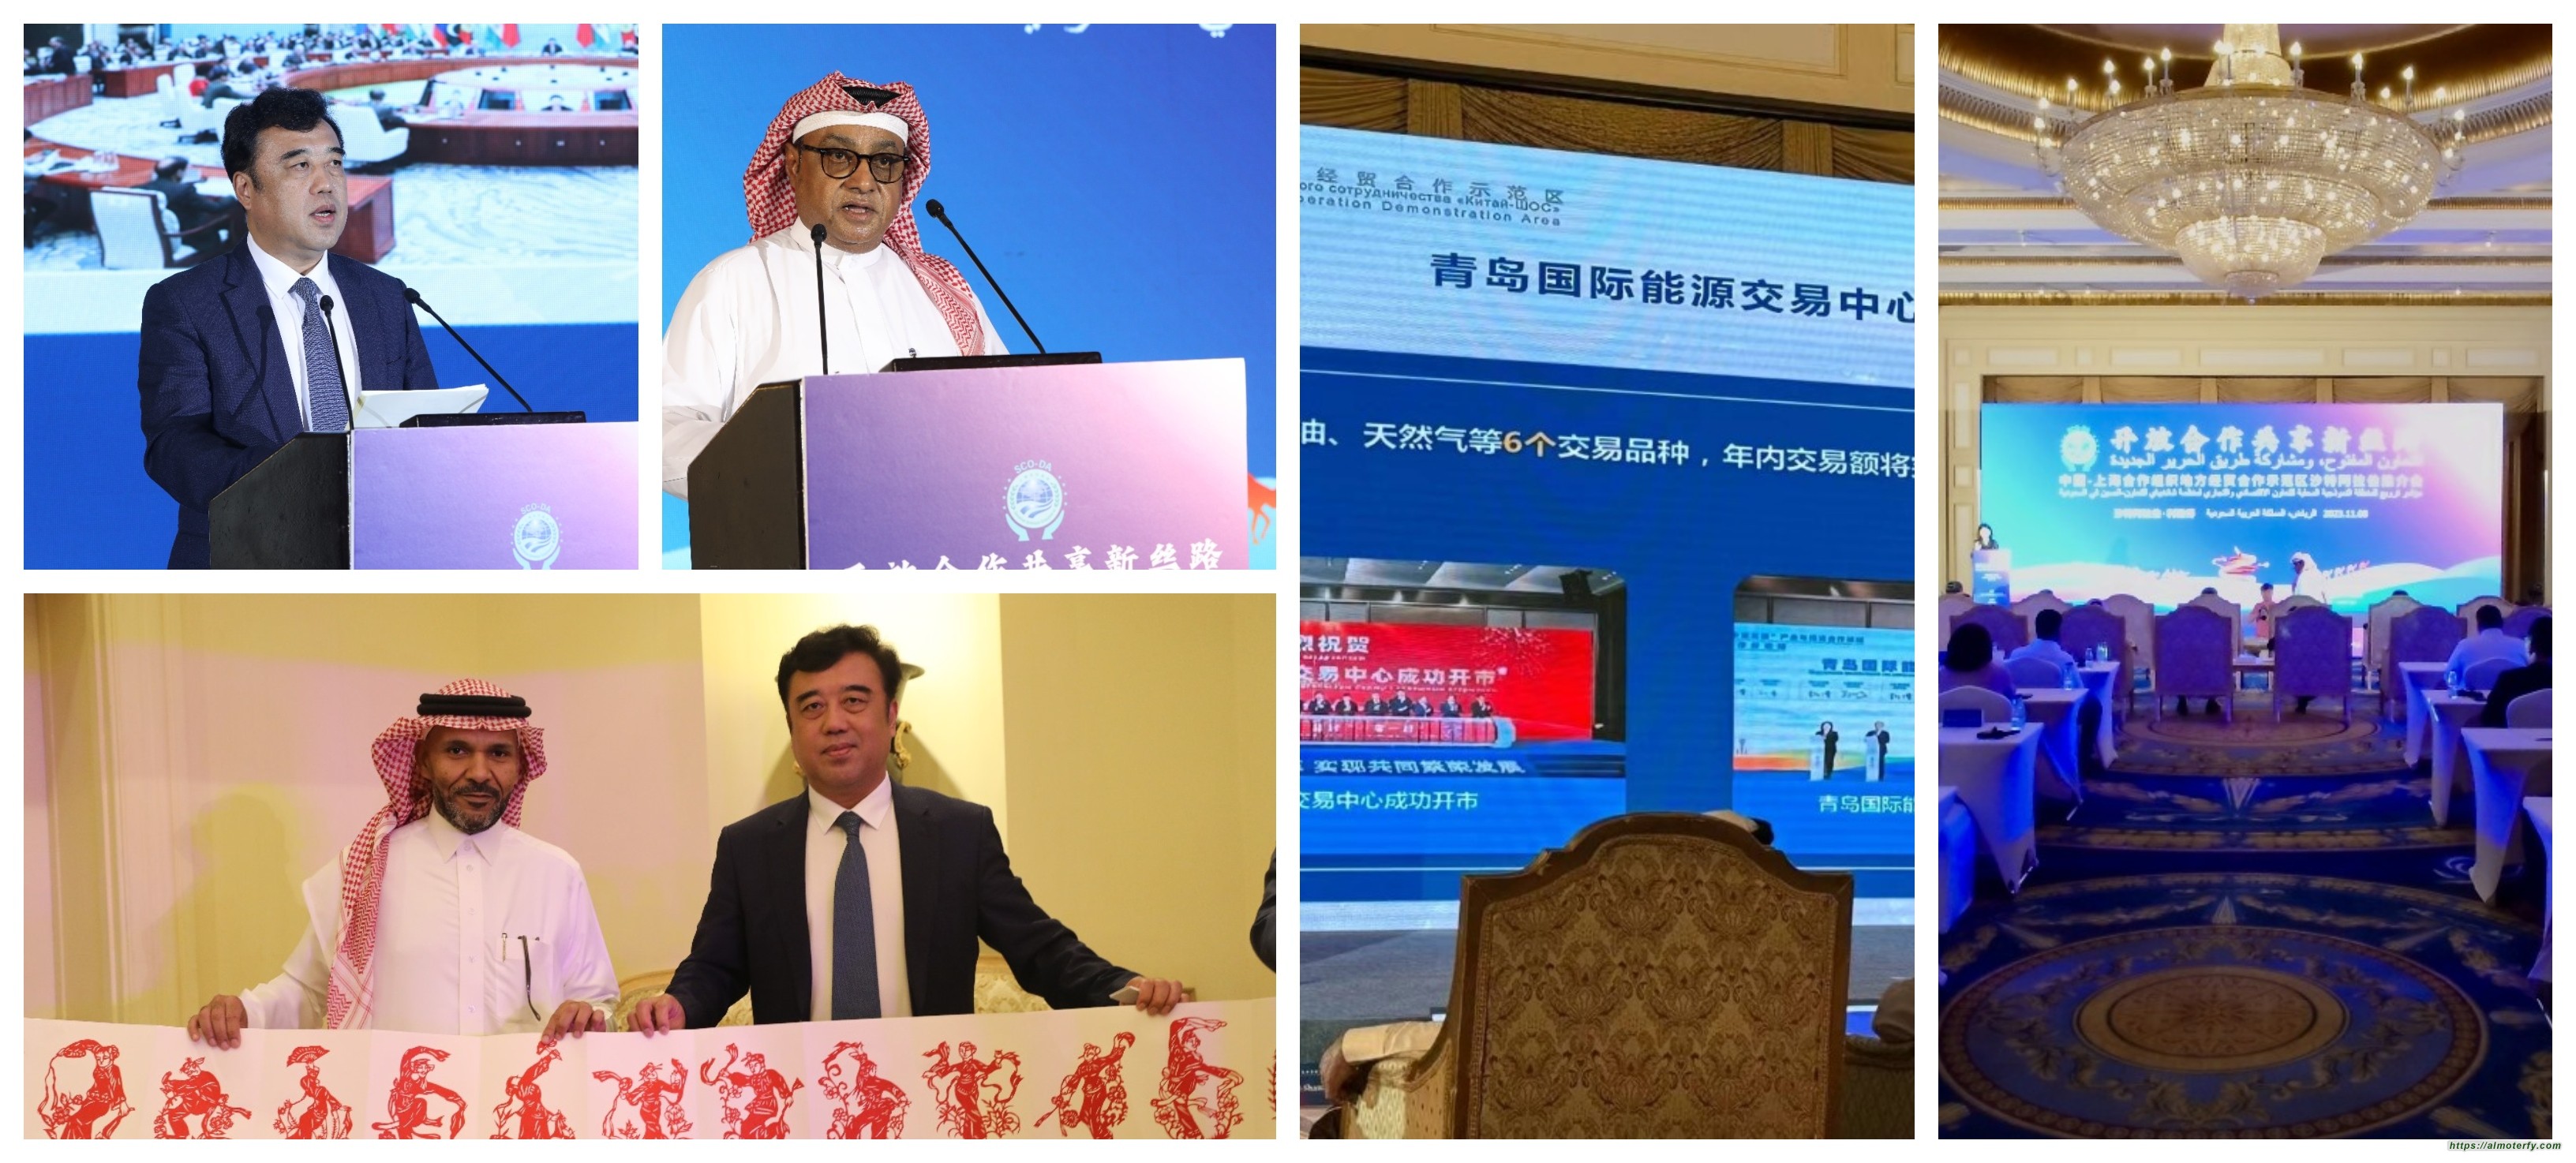 العاصمة الرياض تحتضن مؤتمرا ترويجيا للمنطقة النموذجية المحلية للتعاون الاقتصادي والتجاري بين الصين ومنظمة شانغهاي للتعاون